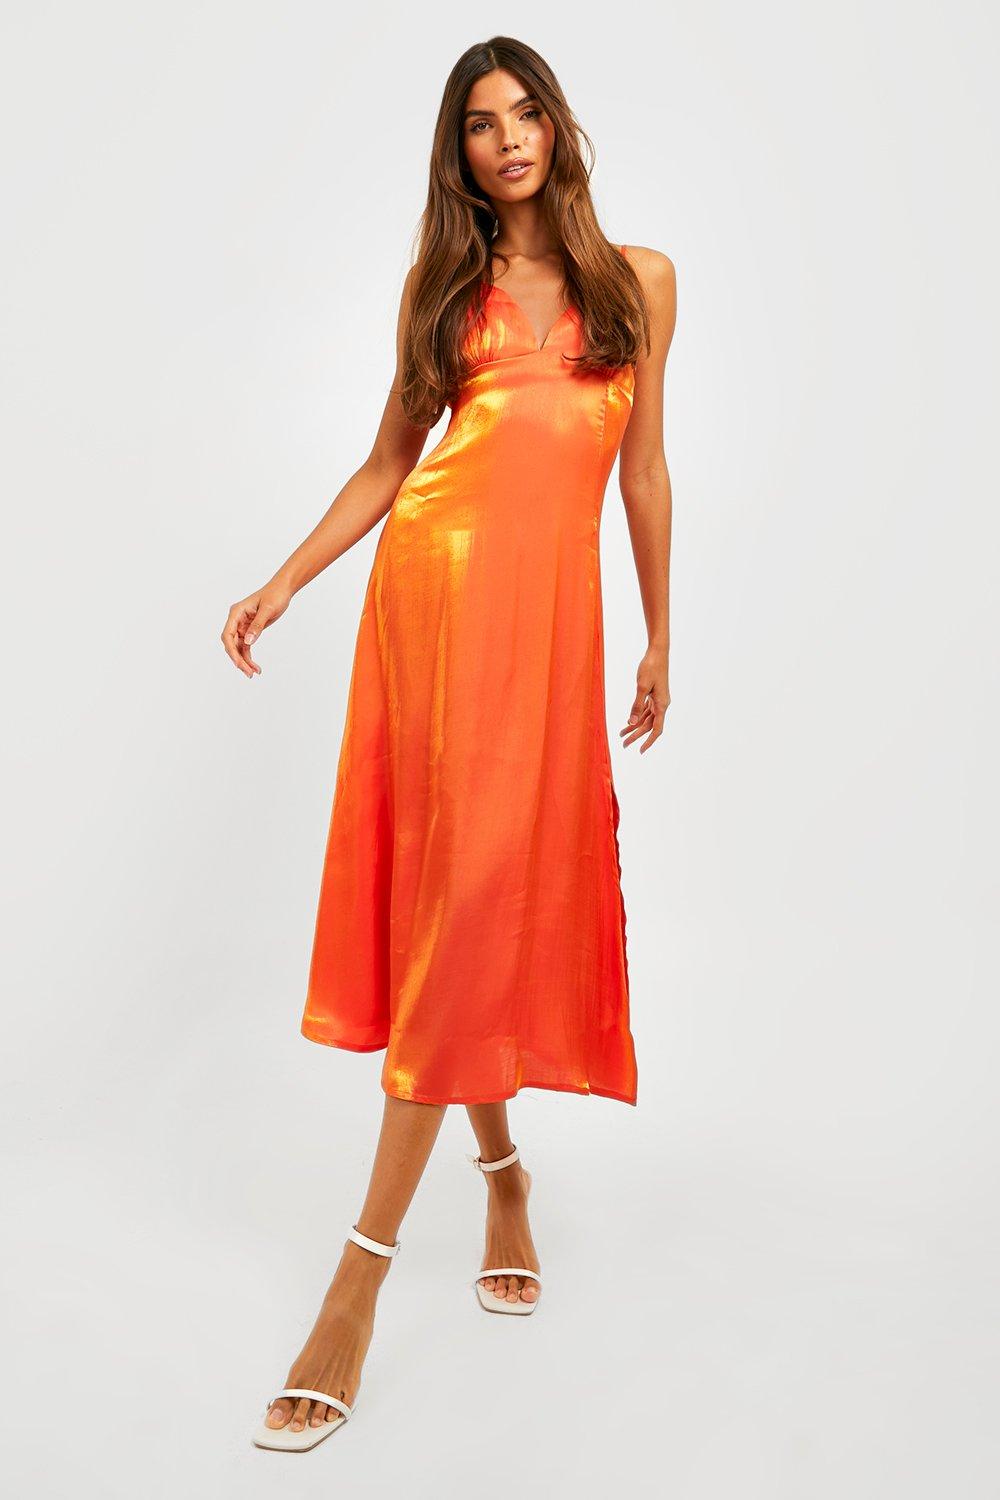 Shimmer Satin Strappy Slip Dress